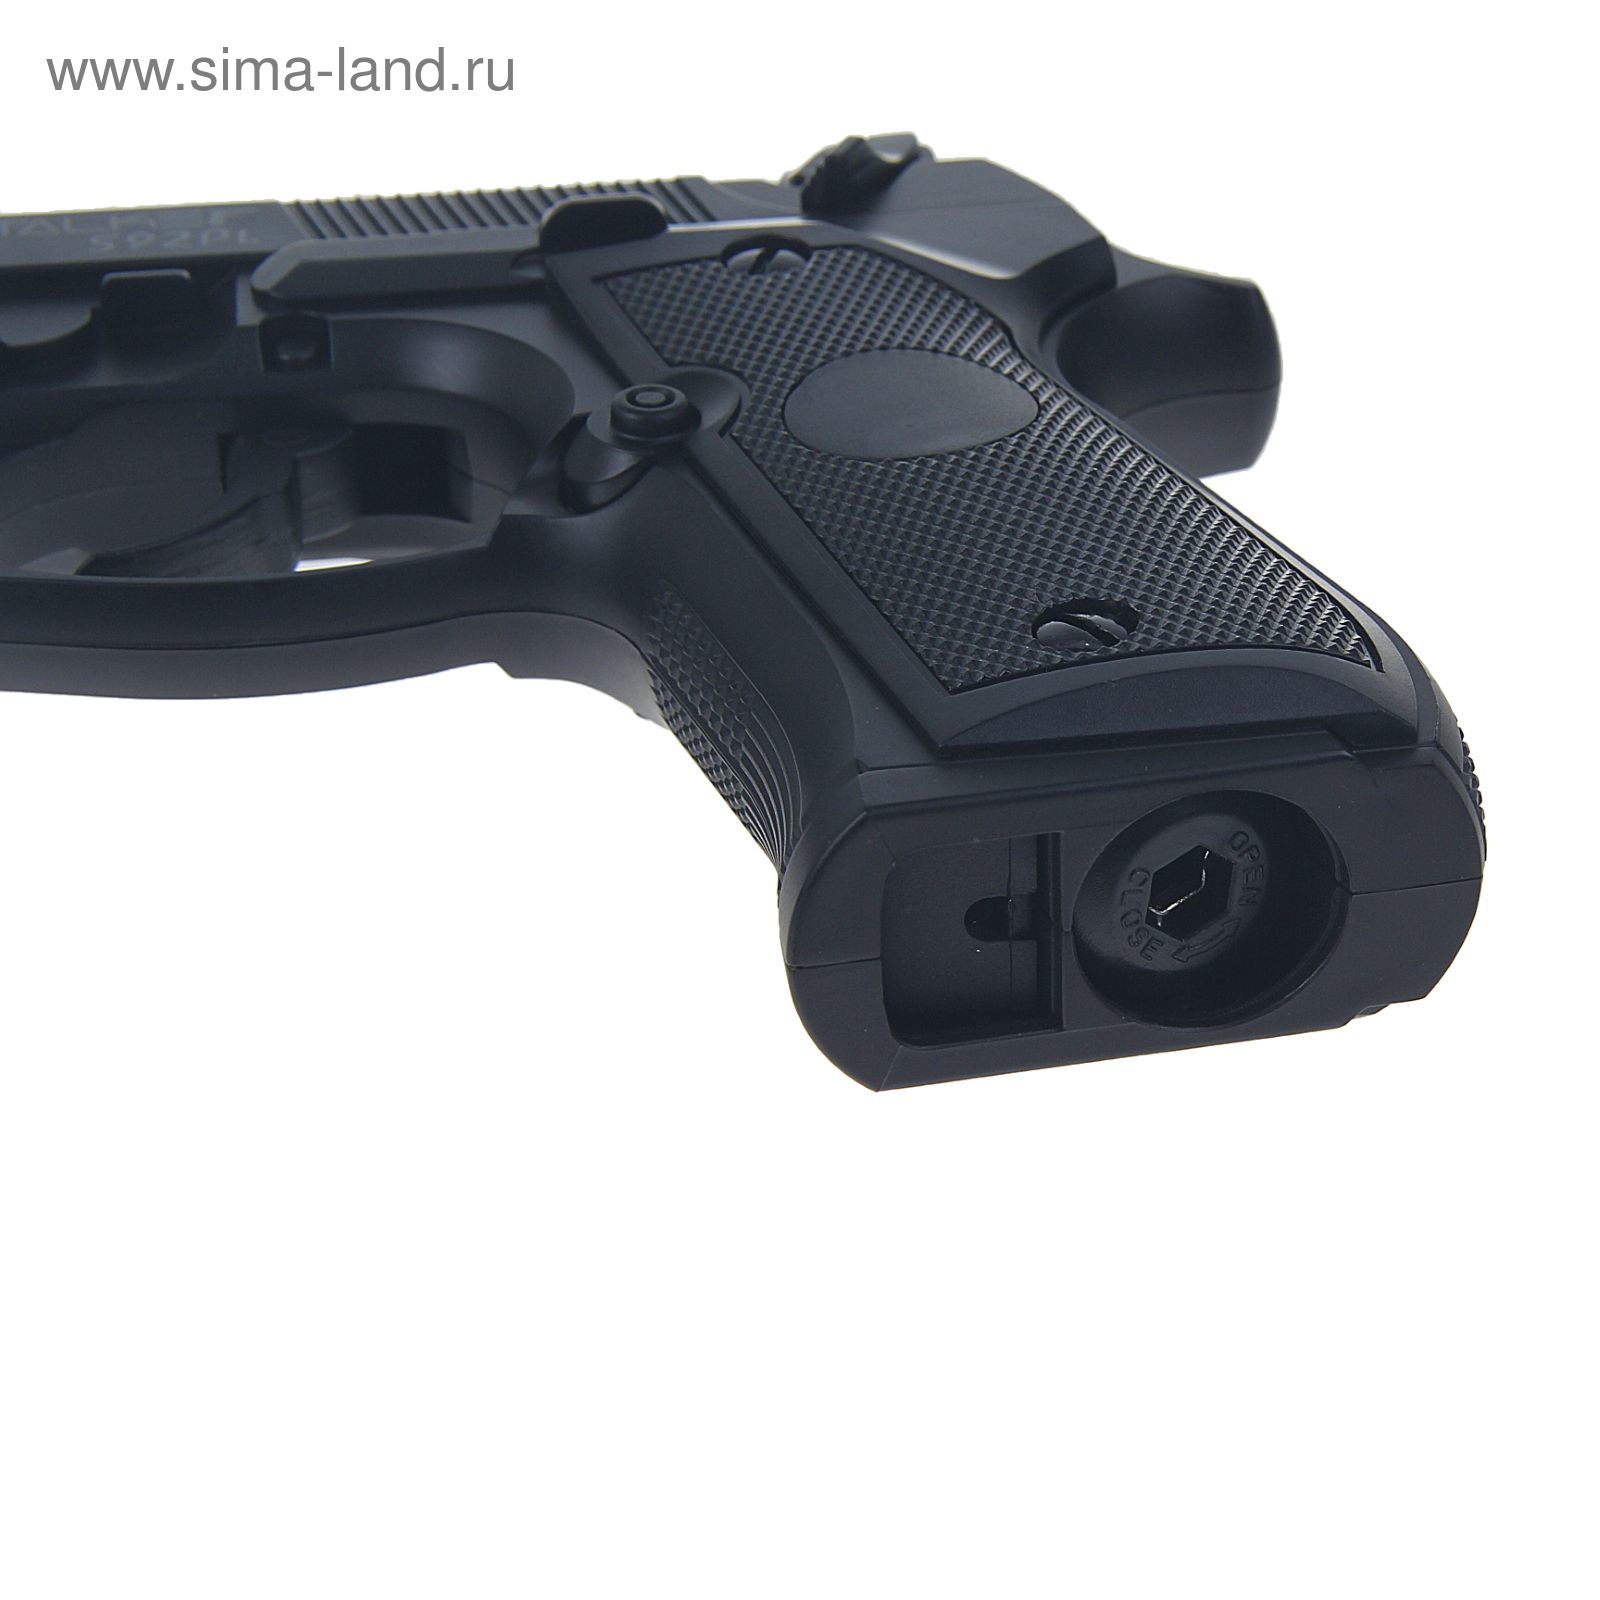 Пистолет пневм. Stalker S92PL (аналог "Beretta 92") к.4,5мм, пластик, 120 м/с, черный